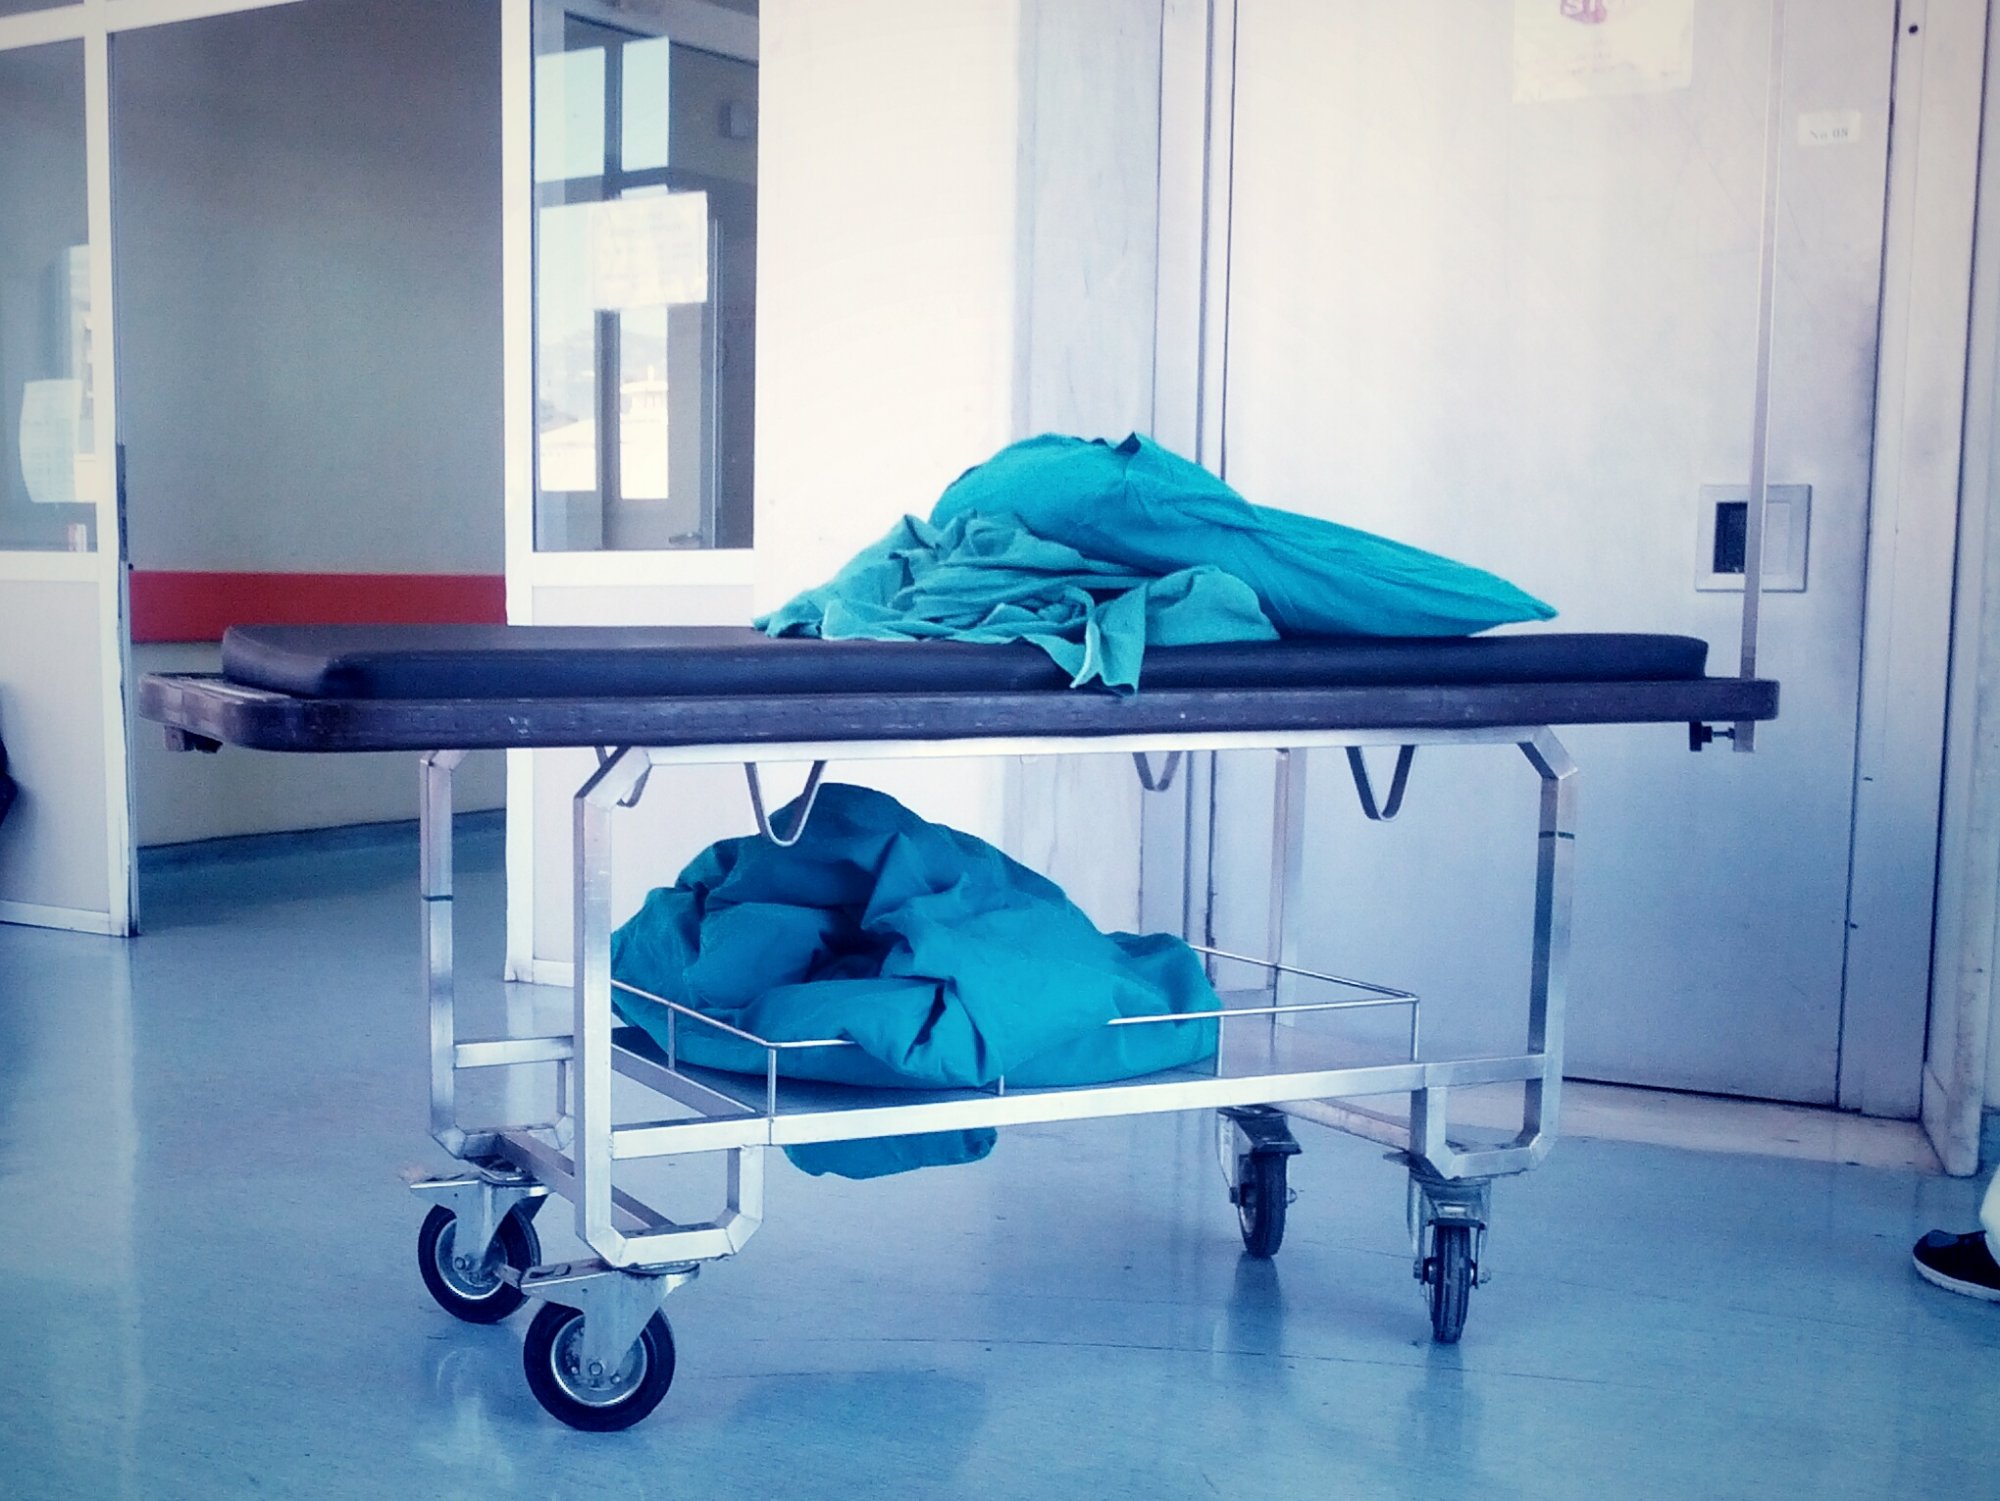 Νοσοκομείο Ιωαννίνων: Μπλόκαραν απογευματινό χειρουργείο – Προγραμμάτισαν πρωινό και δωρεάν την ίδια μέρα